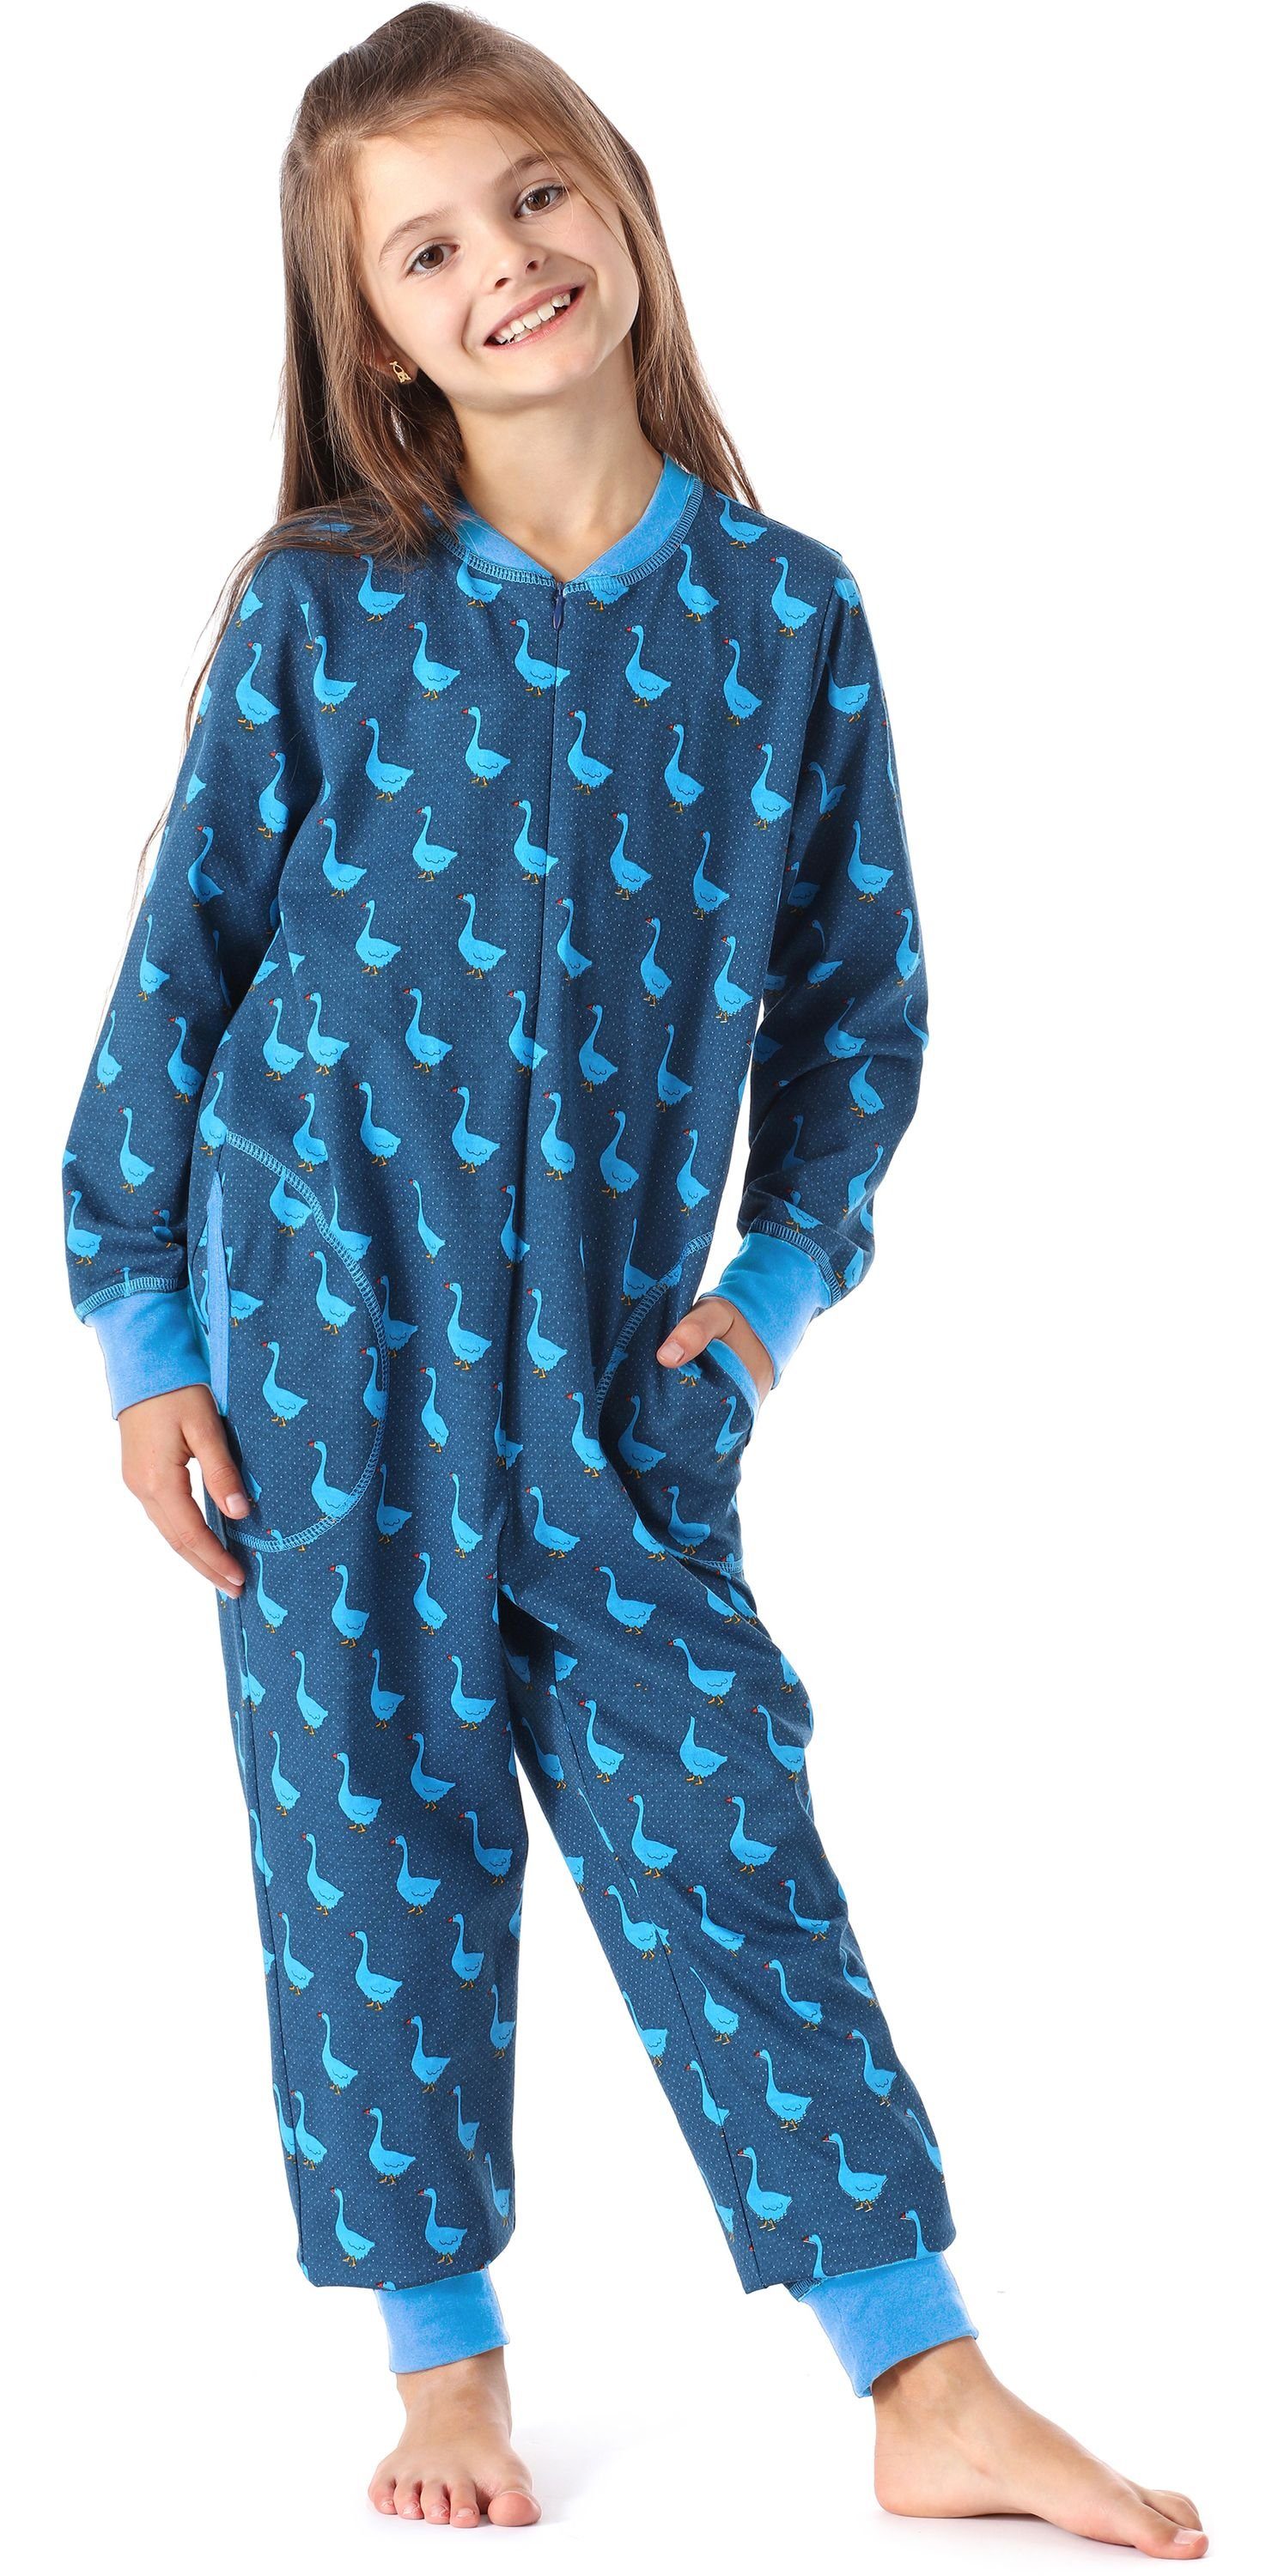 Merry Style Schlafanzug Mädchen Schlafanzug Jumpsuit MS10-186 Blau Gans